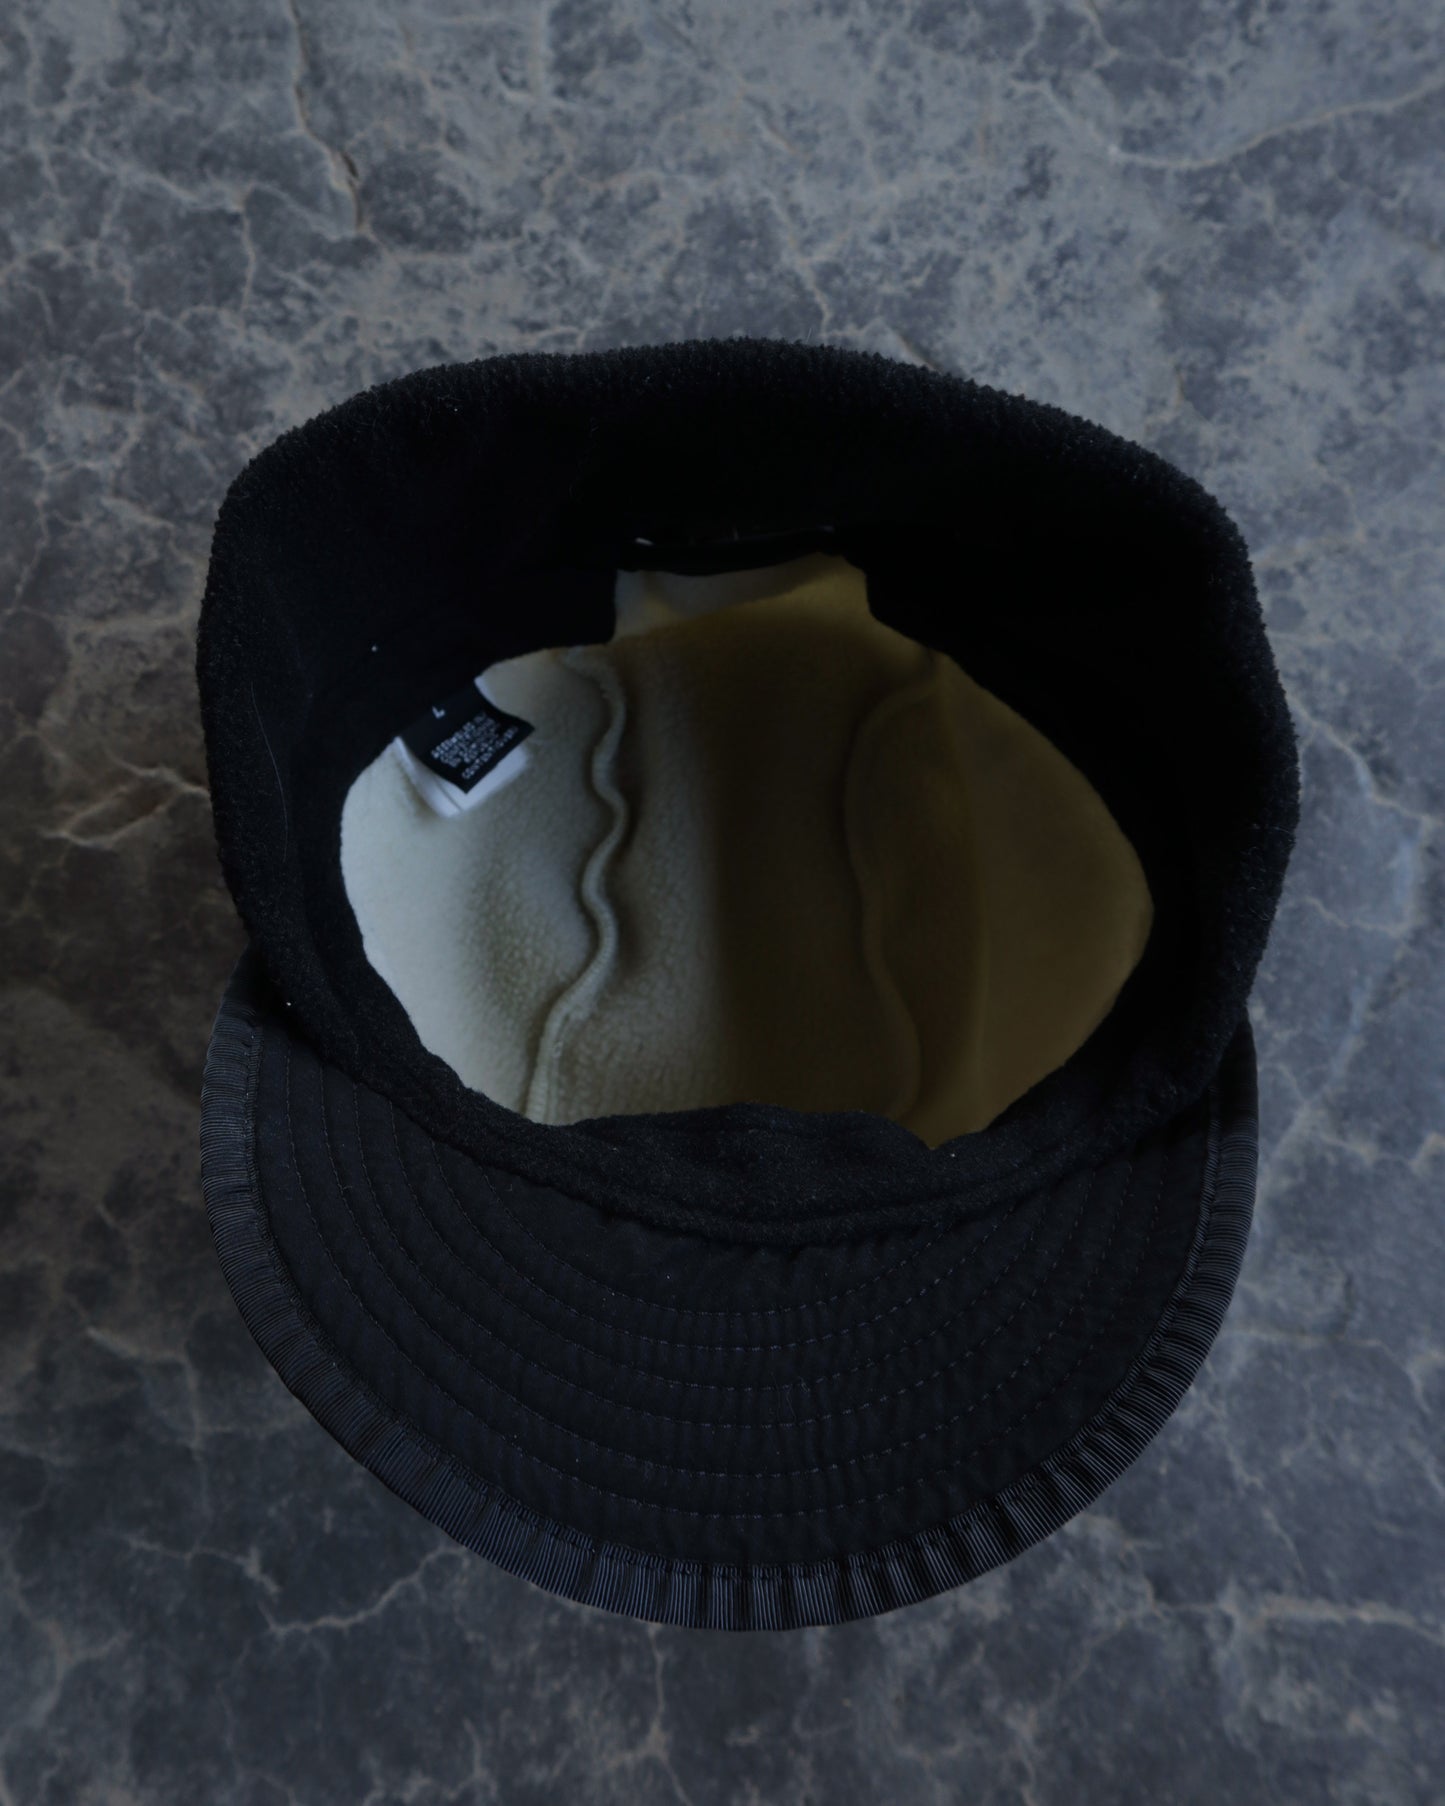 00s Patagonia Cream Hat - OS